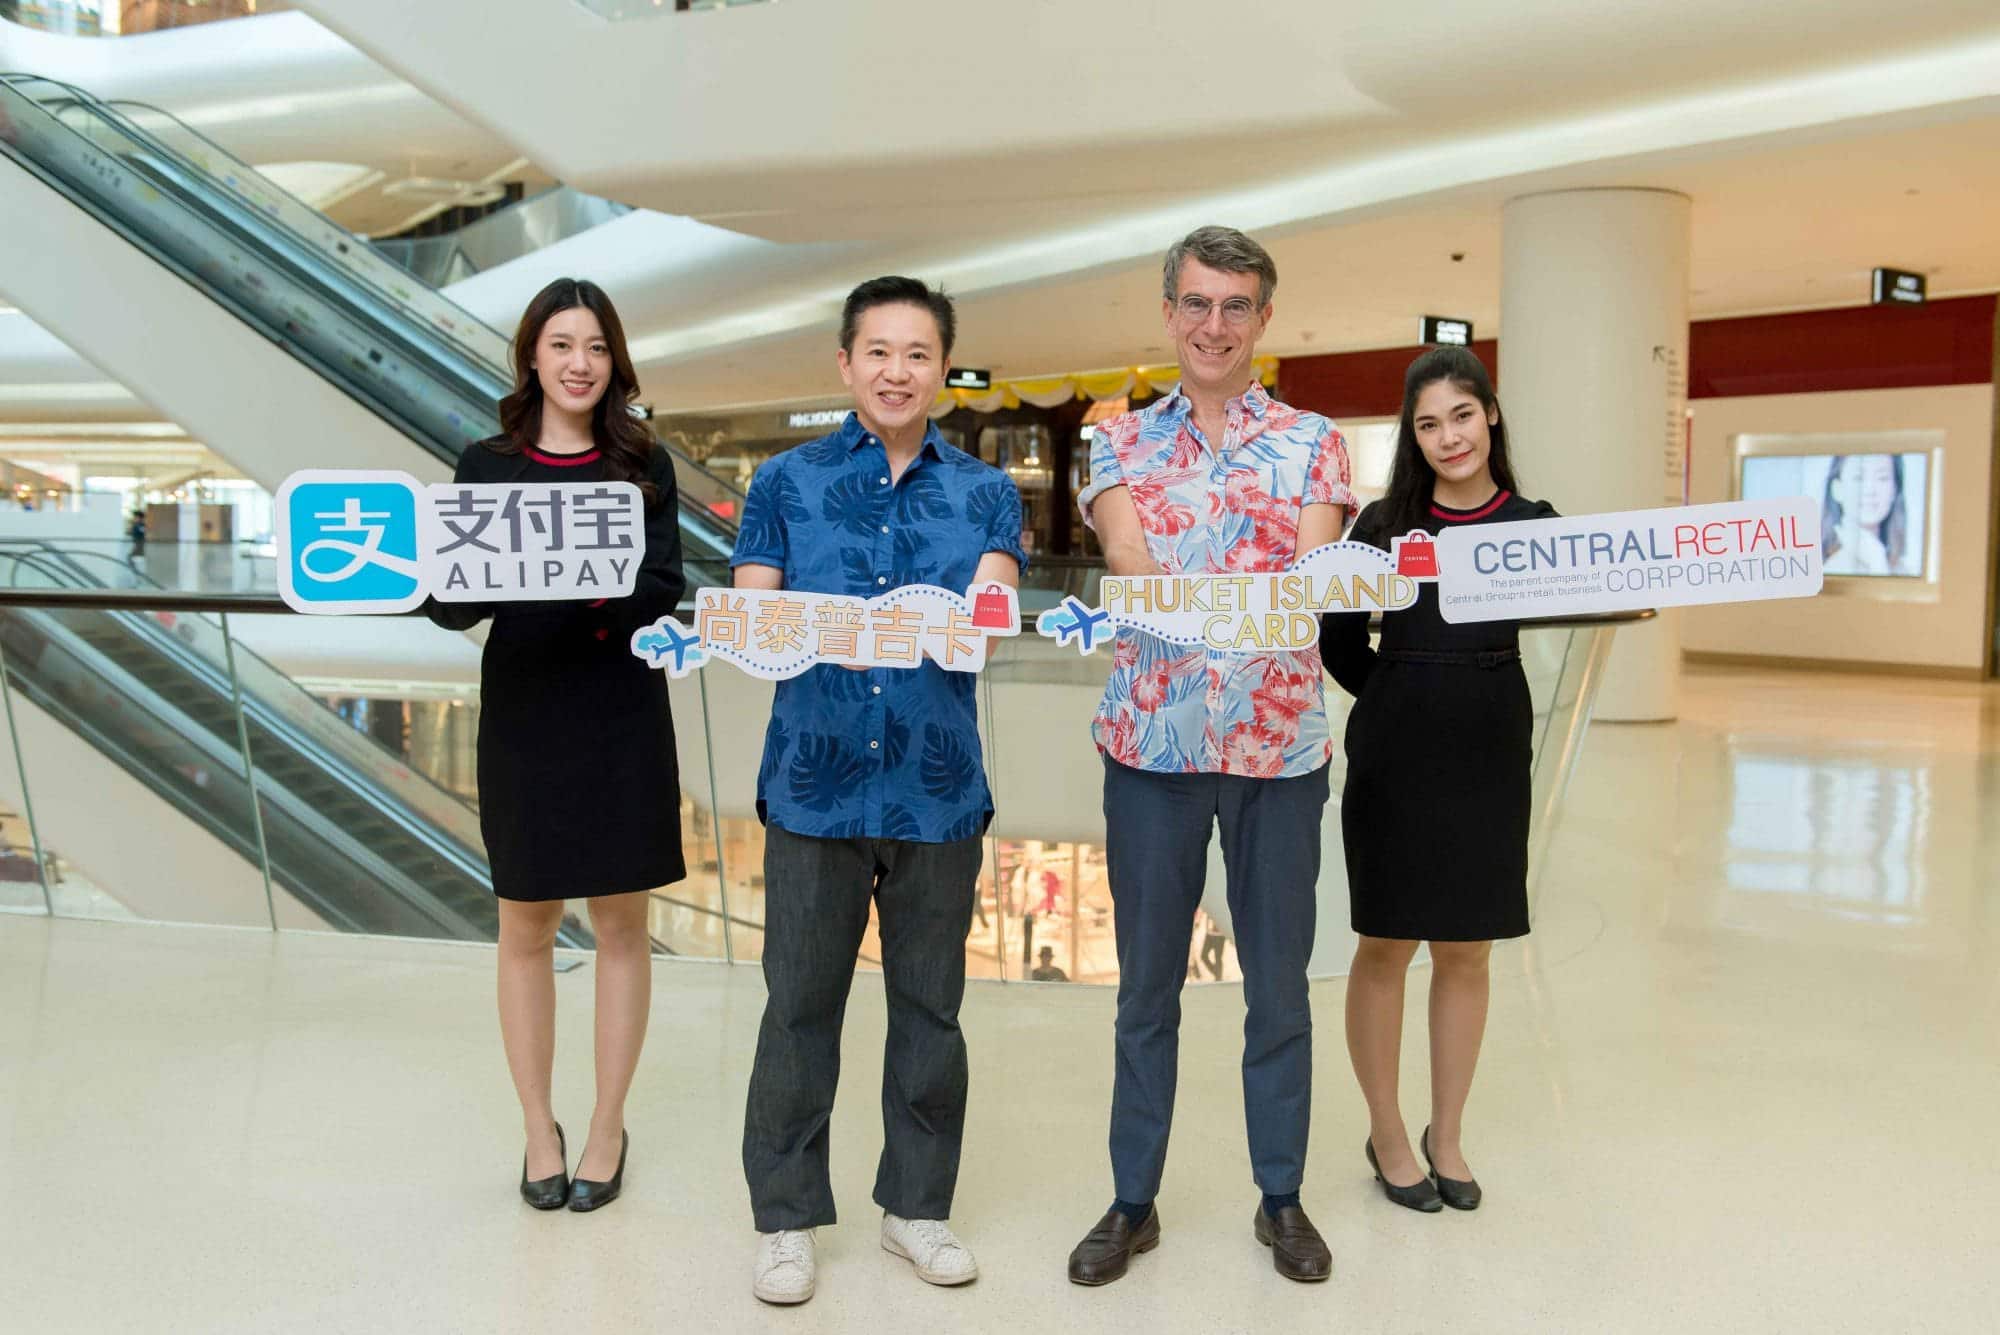 เซ็นทรัล รีเทล จับมือ อาลีเพย์ จัดแคมเปญ ‘Phuket Island Card’ มอบส่วนลดมากกว่า 100 ร้านค้าในจังหวัดภูเก็ต กระตุ้นยอดช้อปนักท่องเที่ยวจีน 1